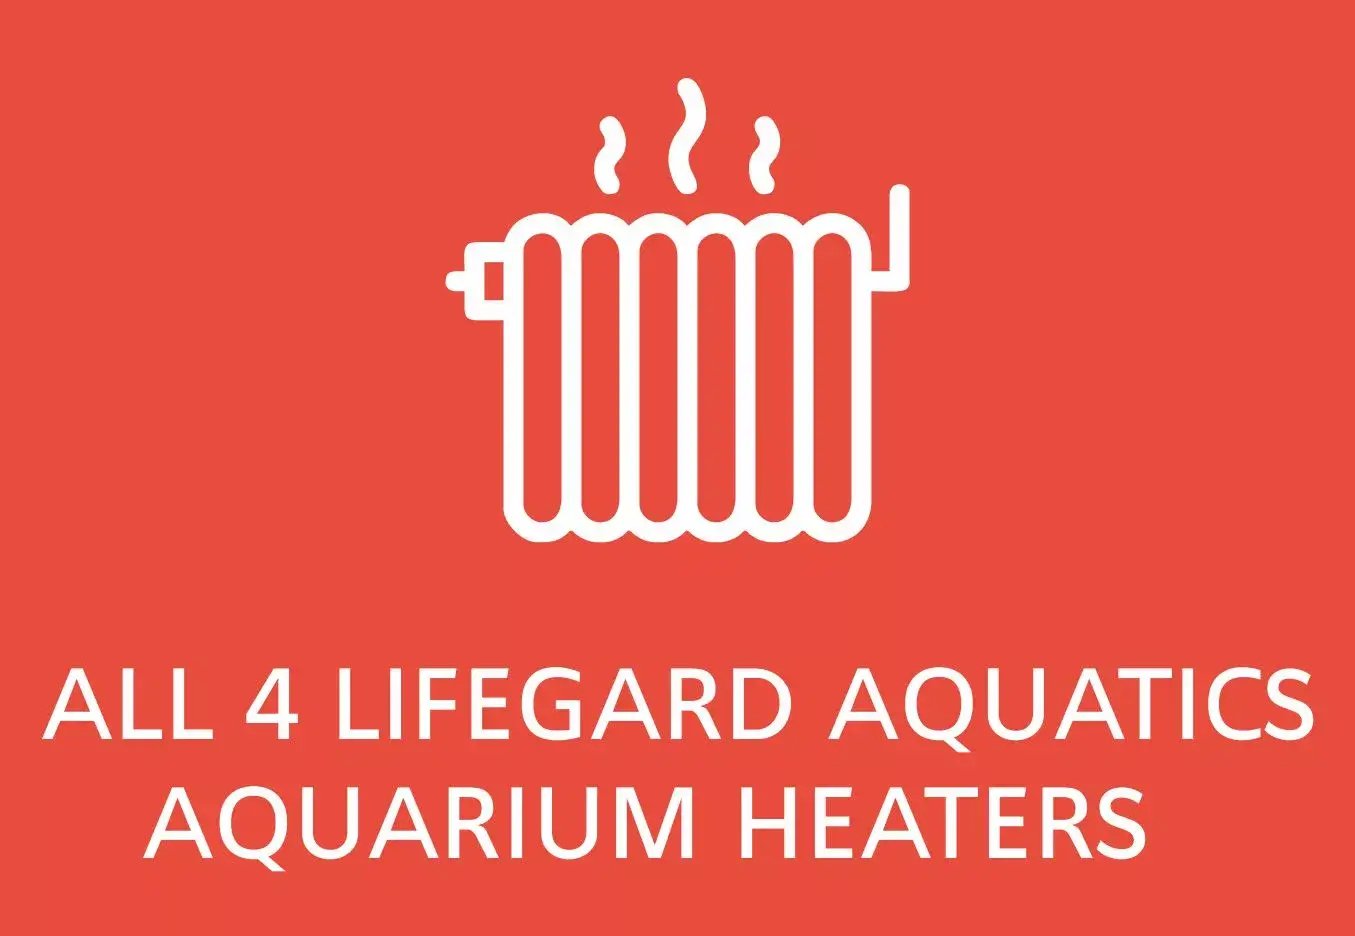 Lifegard aquatics aquarium heaters